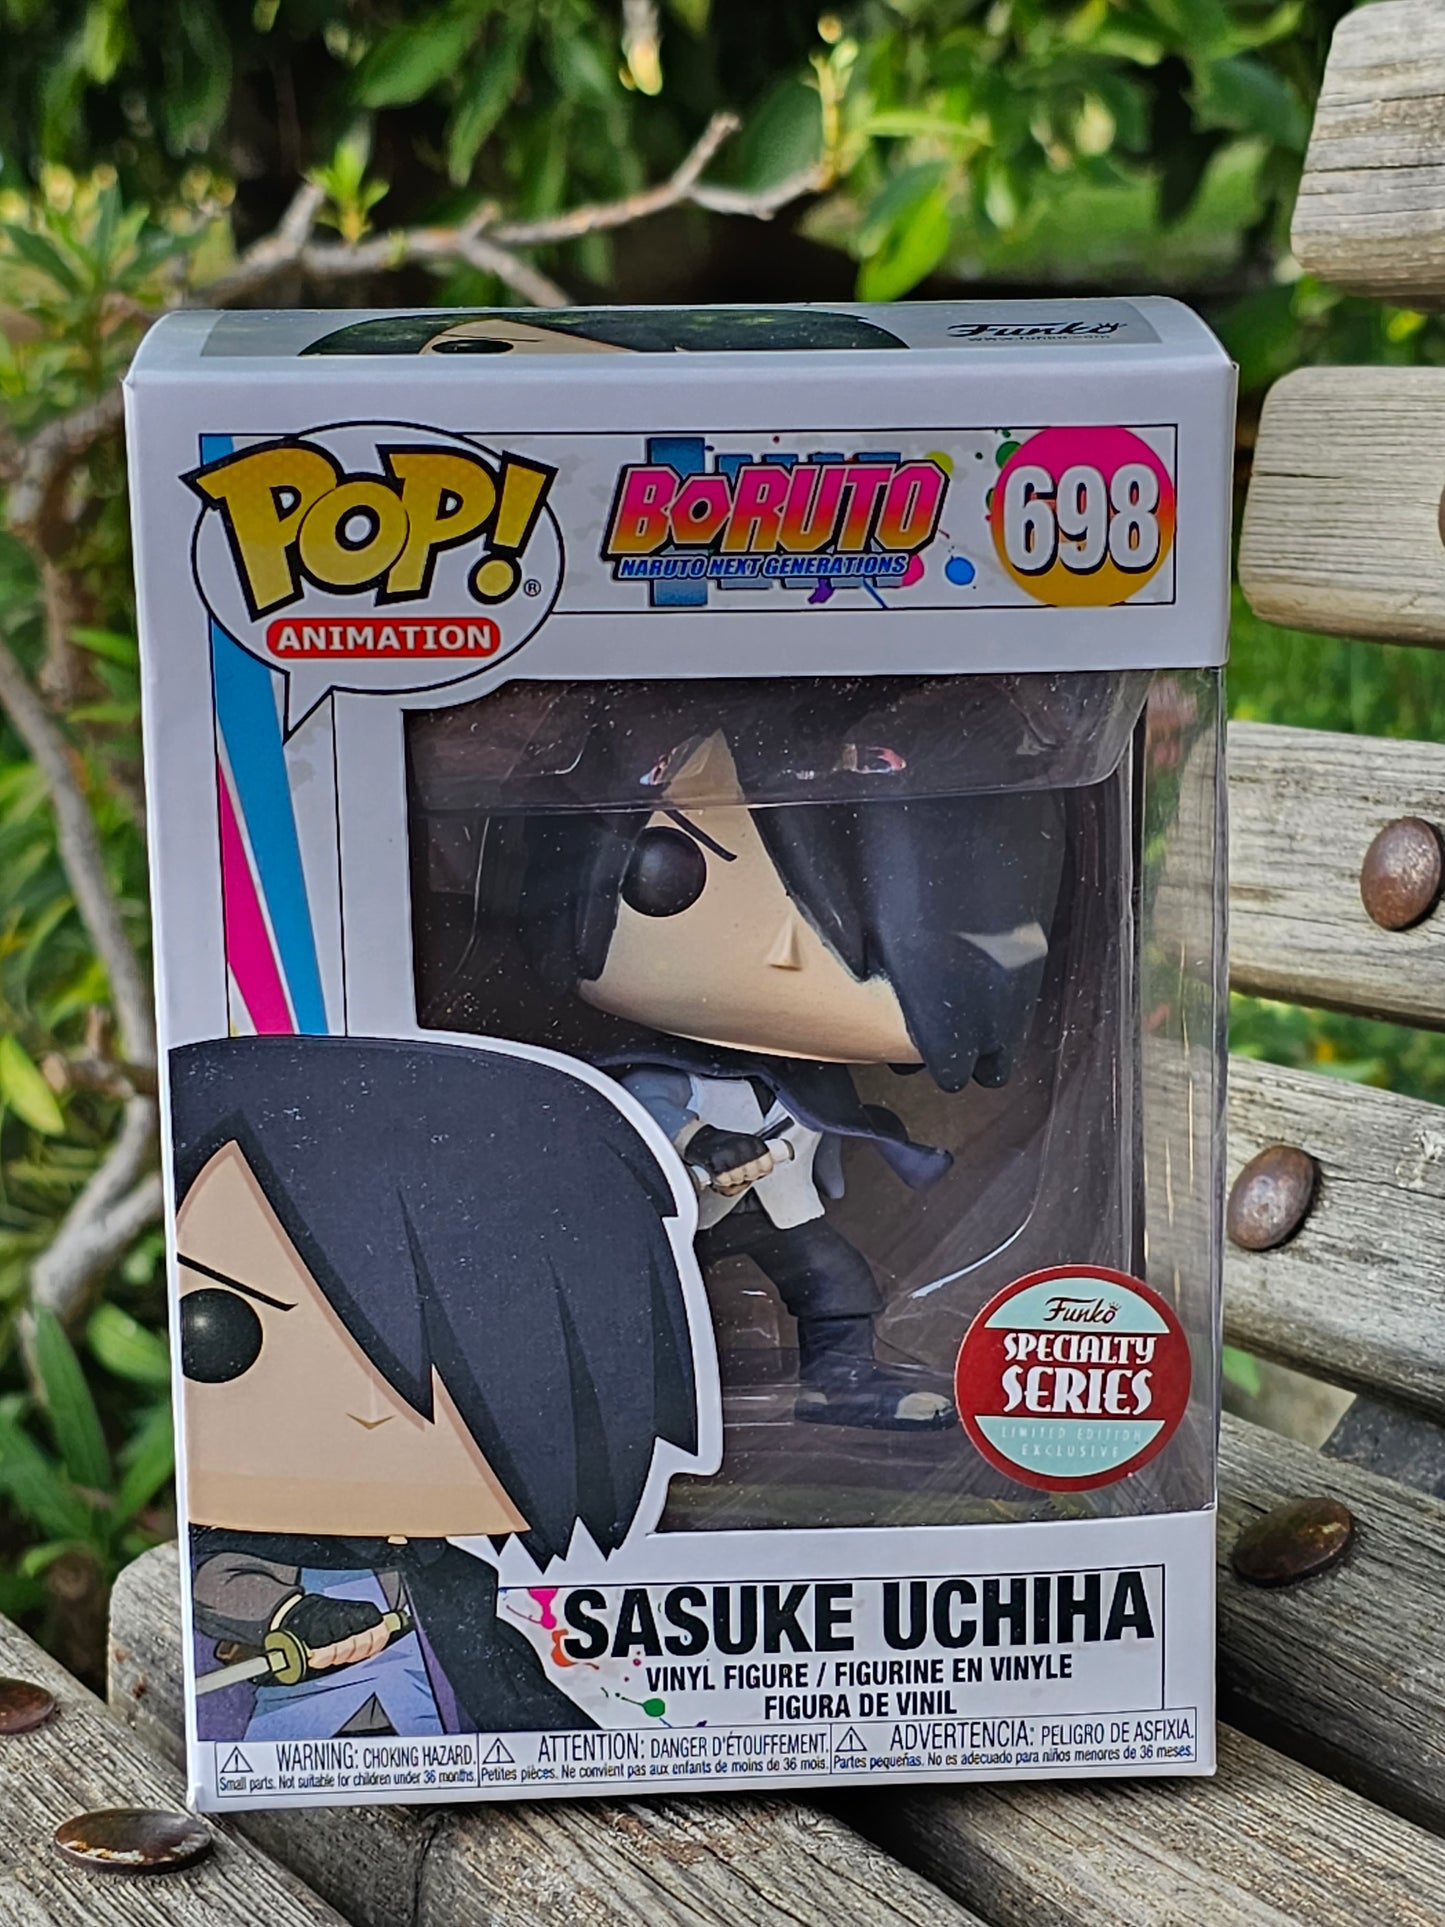 Naruto: Sasuke Funko Pop